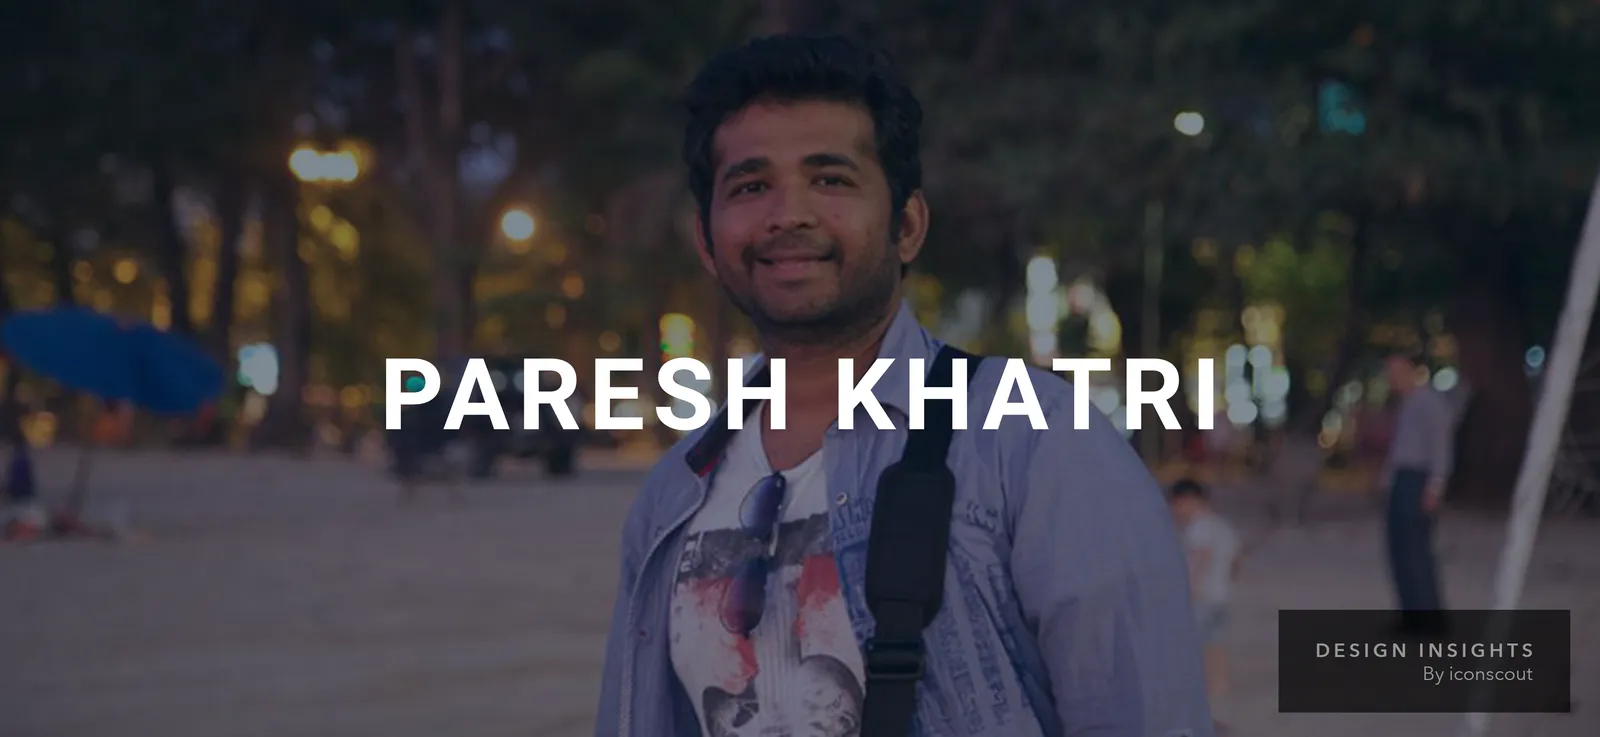 Design Insights: Paresh Khatri